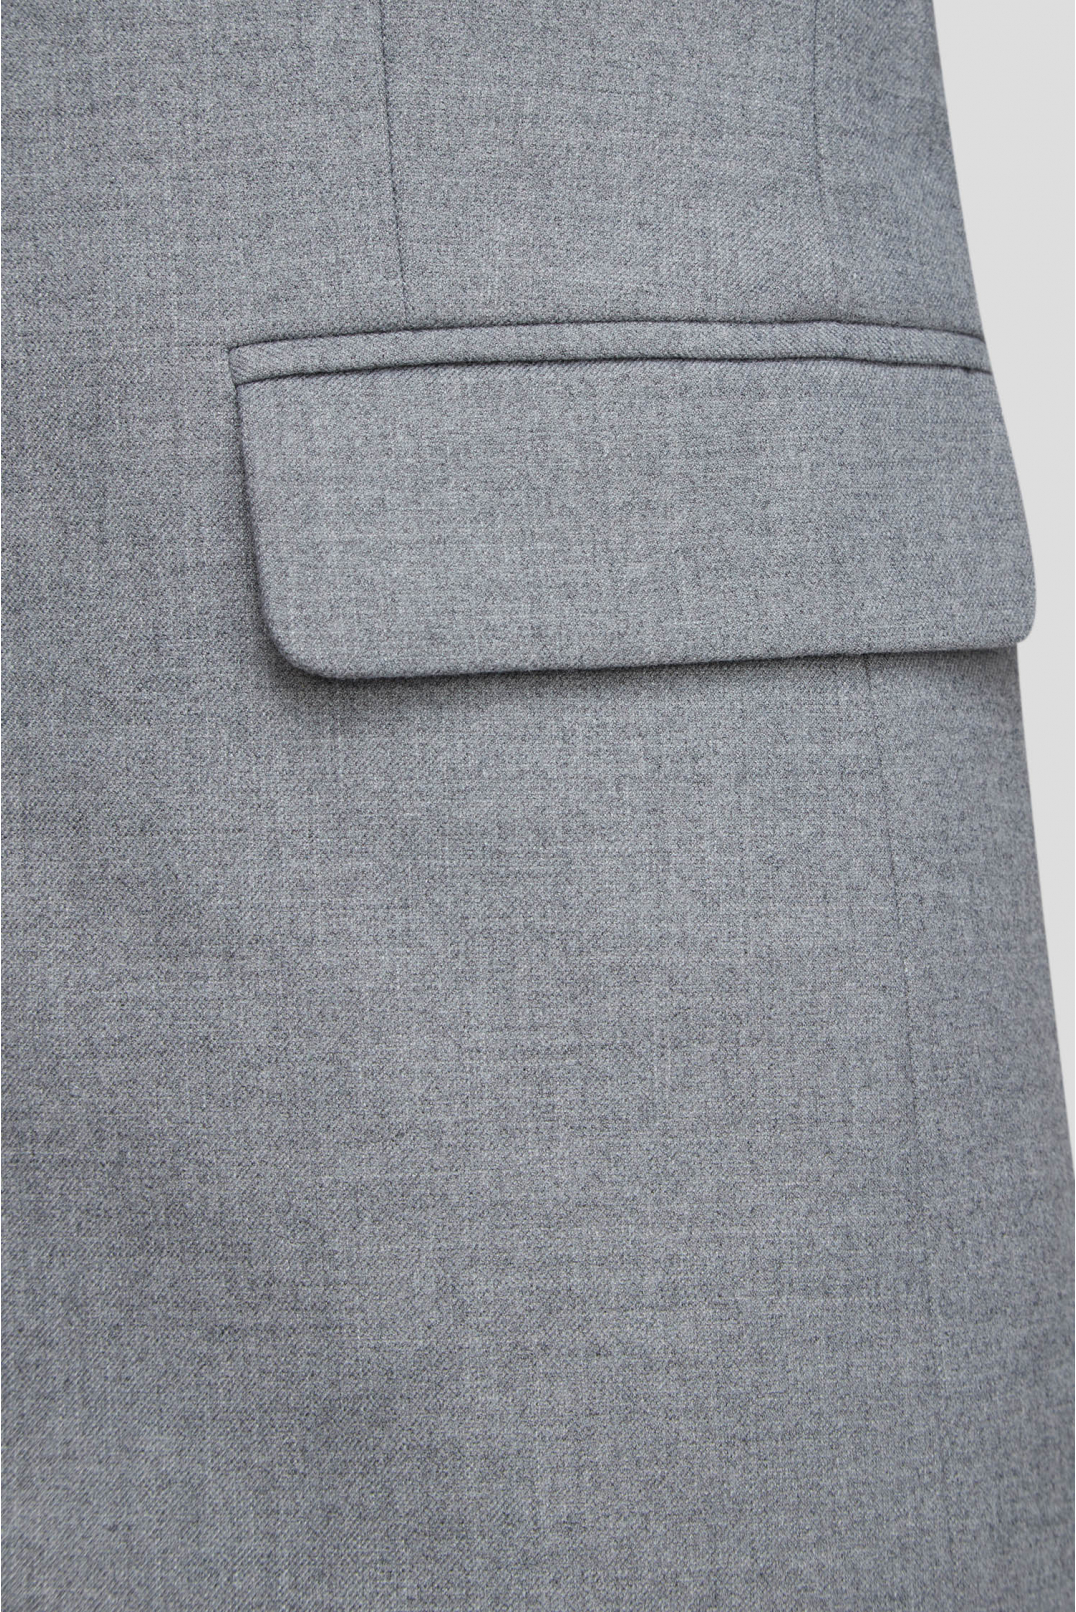 Женский серый костюм (пиджак, брюки) - 4